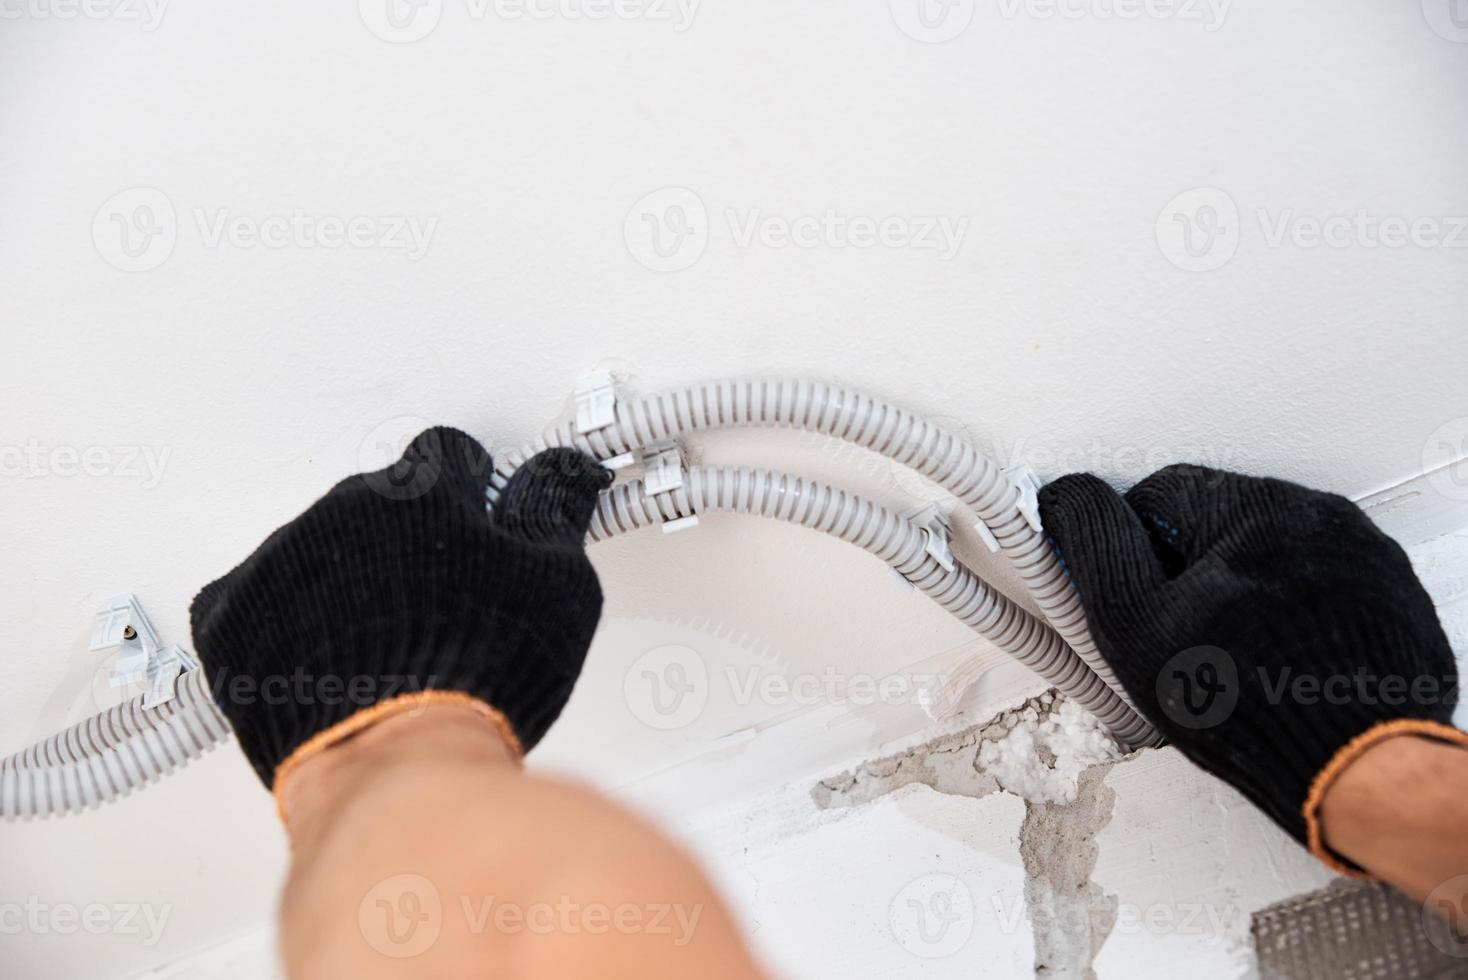 électricien fixant le câble électrique au mur, gros plan photo